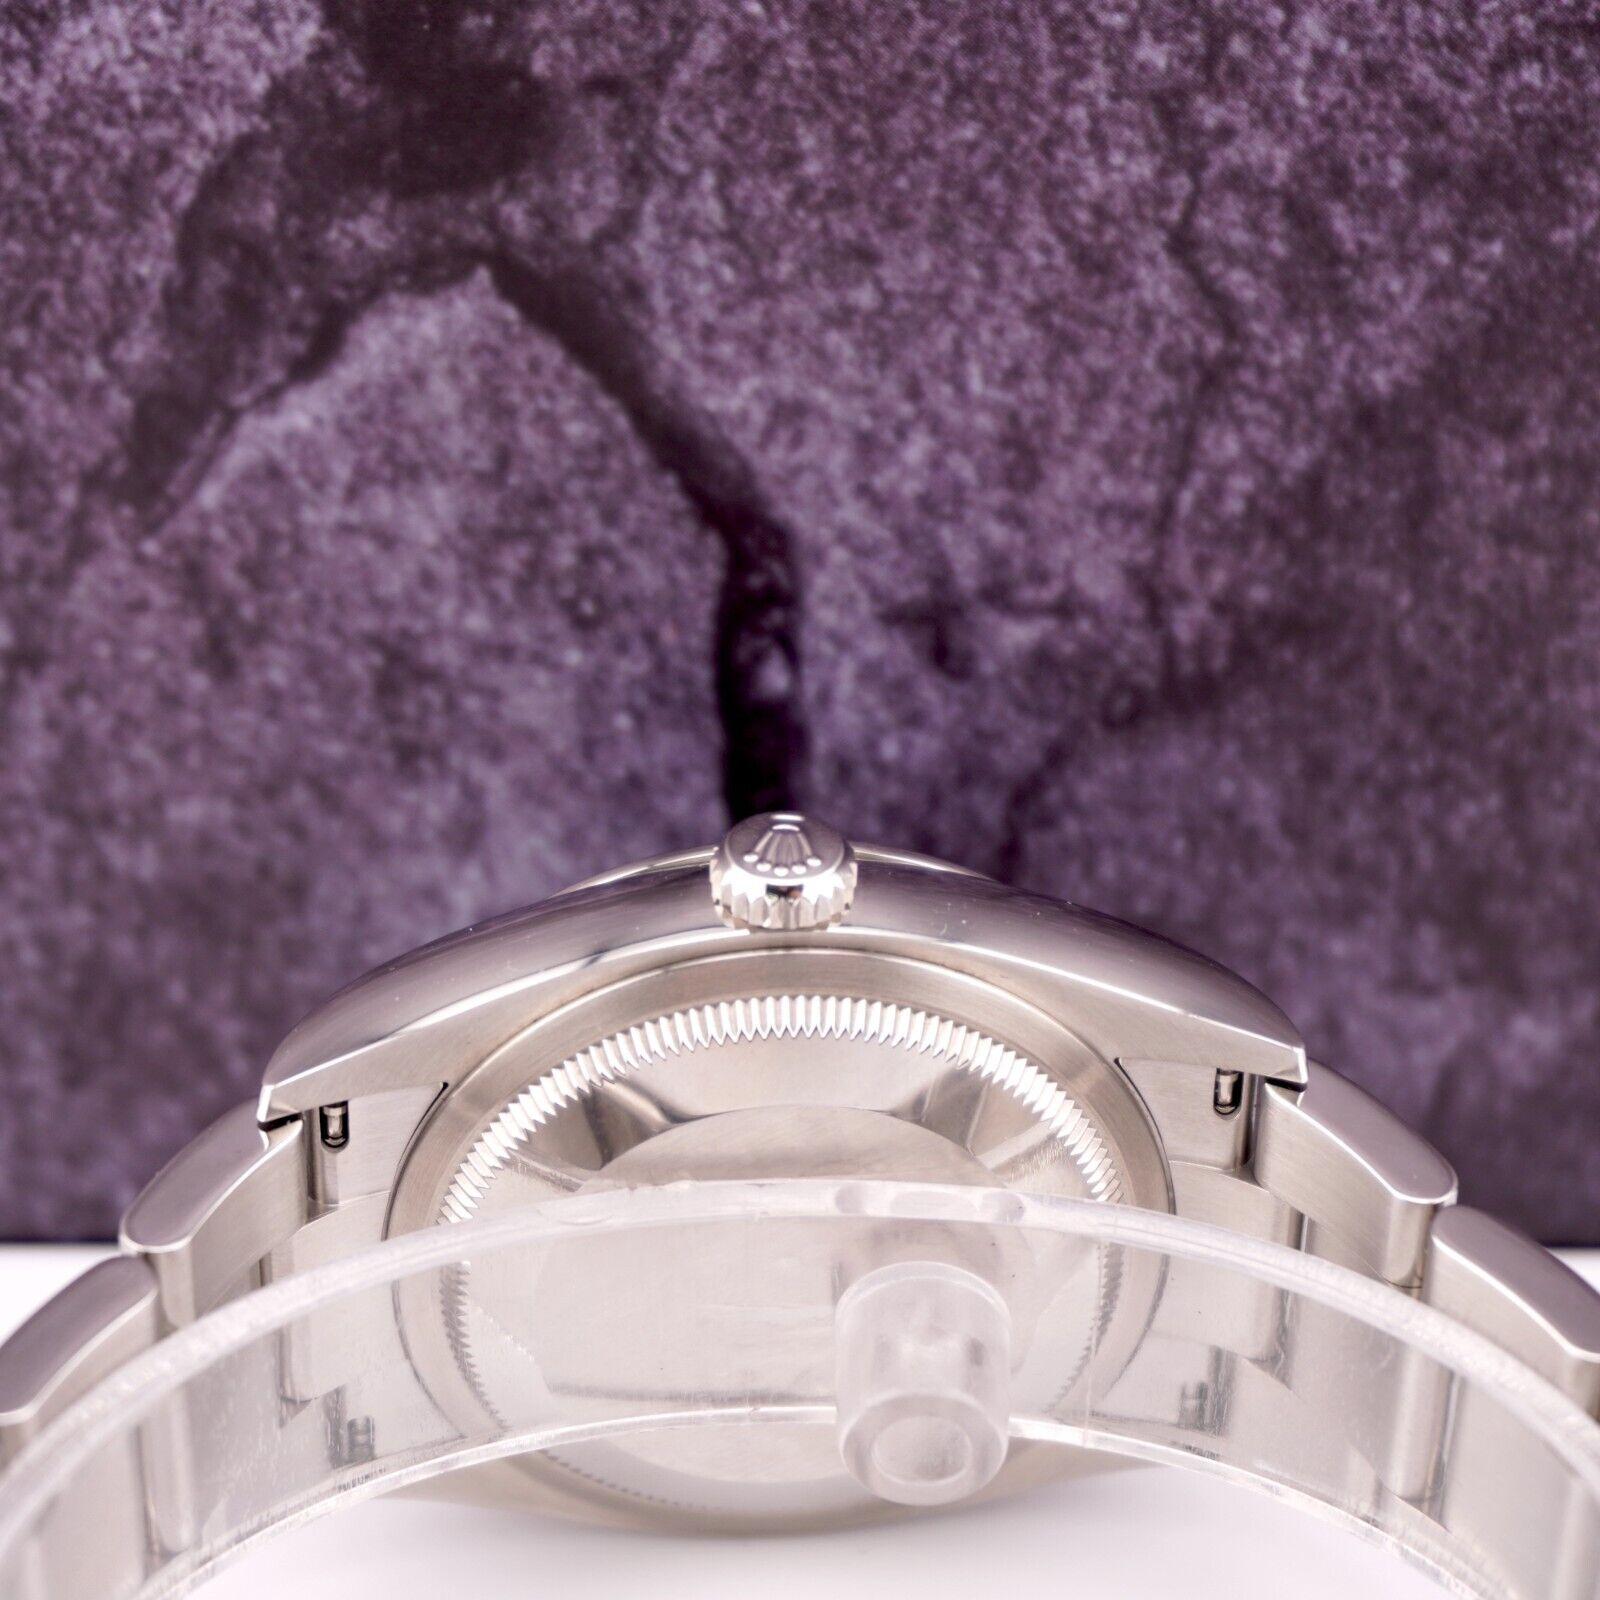 Rolex Datejust 36mm Uhr

Gebraucht mit Original Box & Karte
100% authentische Echtheitskarte
Zustand - (Ausgezeichneter Zustand) - Siehe Bilder
Referenz der Uhr - 126200
Modell - Datejust
Zifferblattfarbe - Grün
MATERIAL - Rostfreier Stahl
Uhr wird